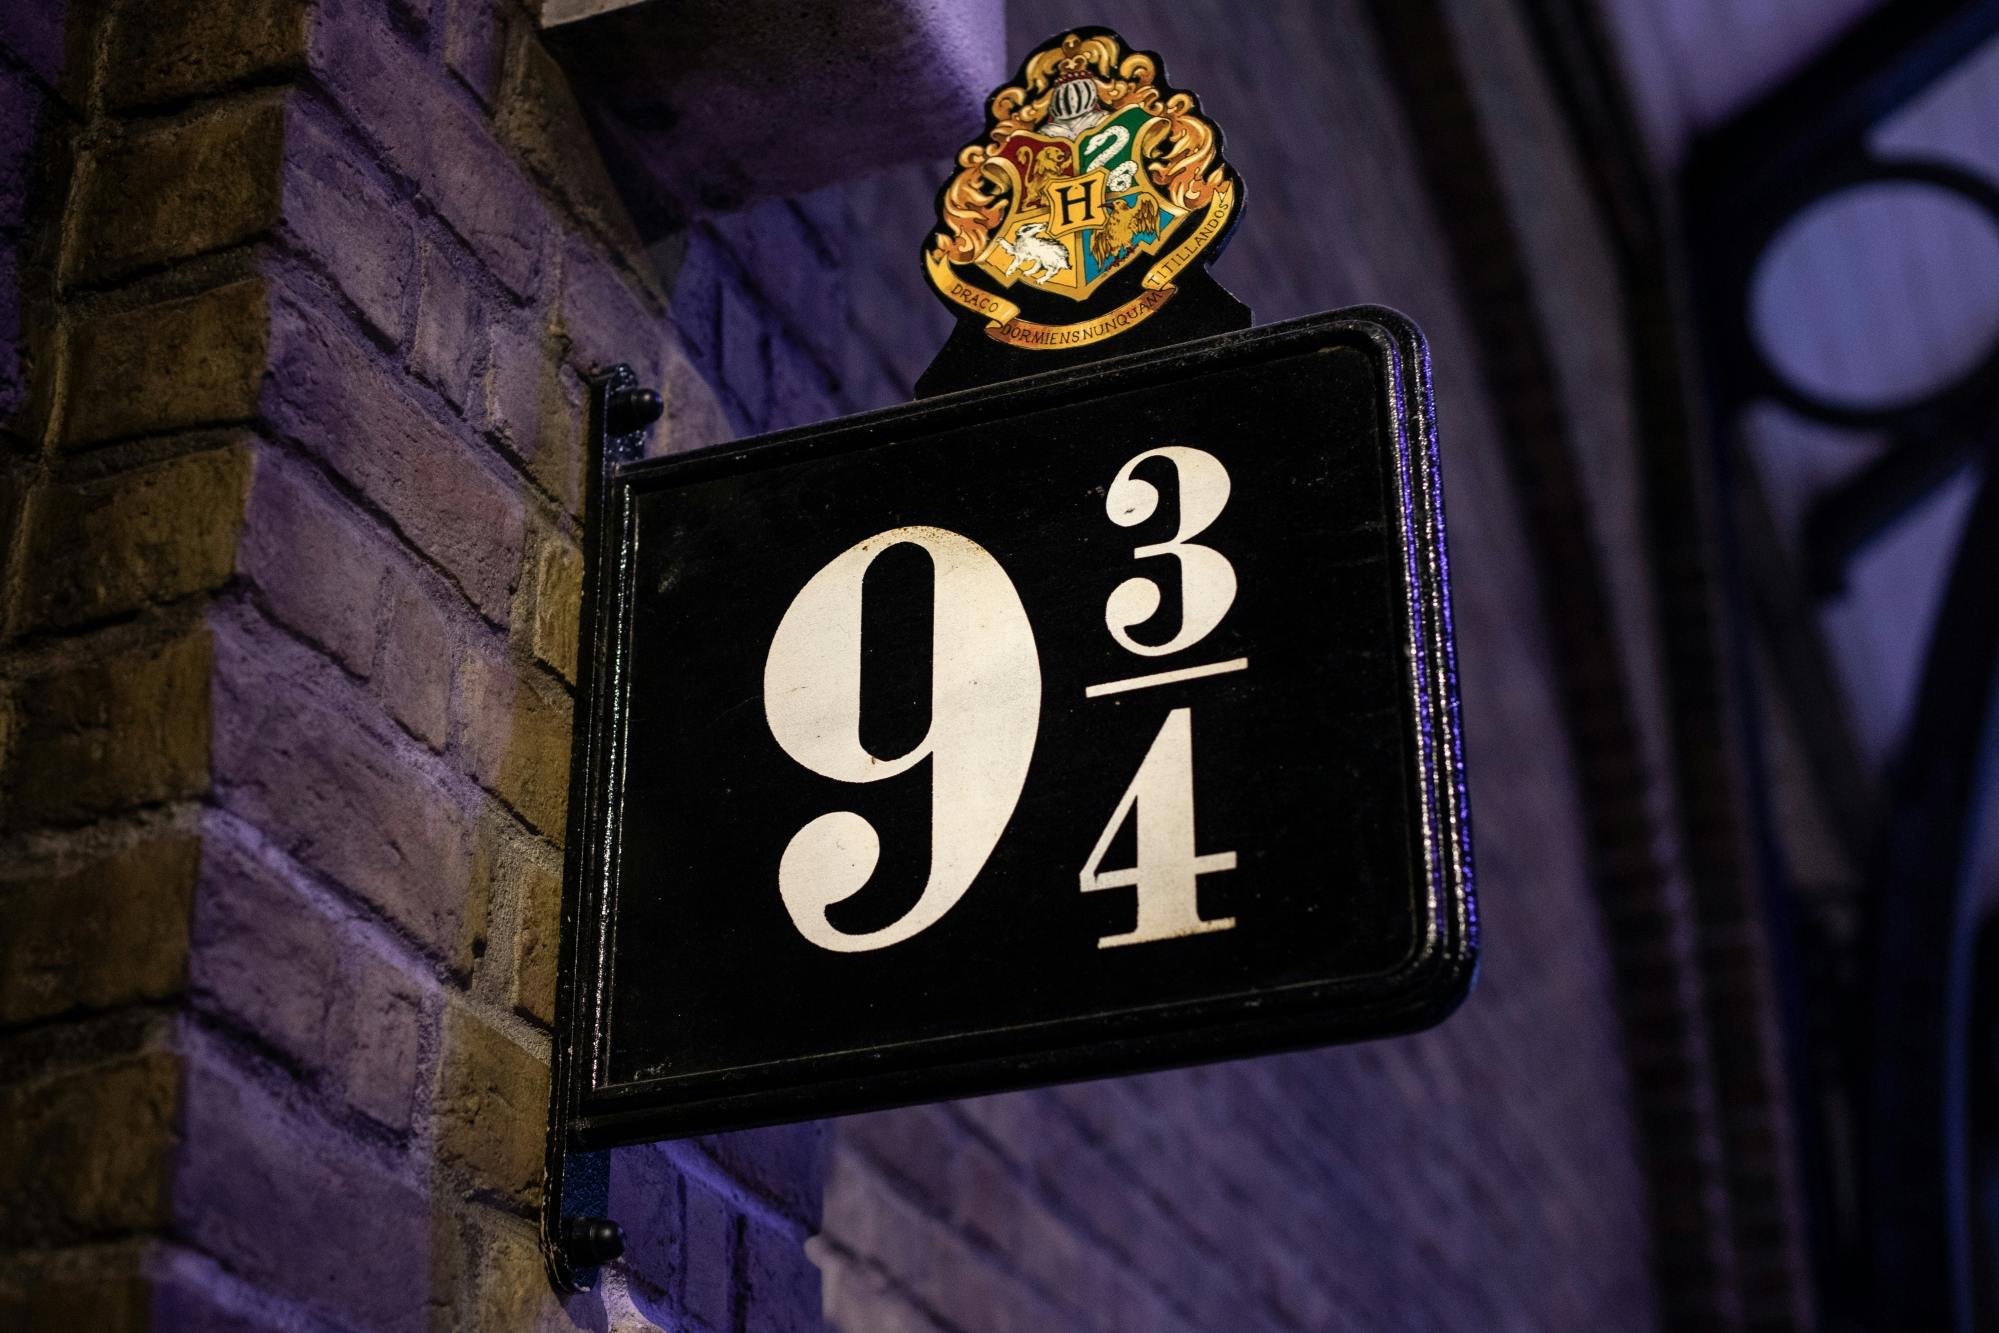 Visite des studios Warner Bros : The Making of Harry Potter à Londres avec transport